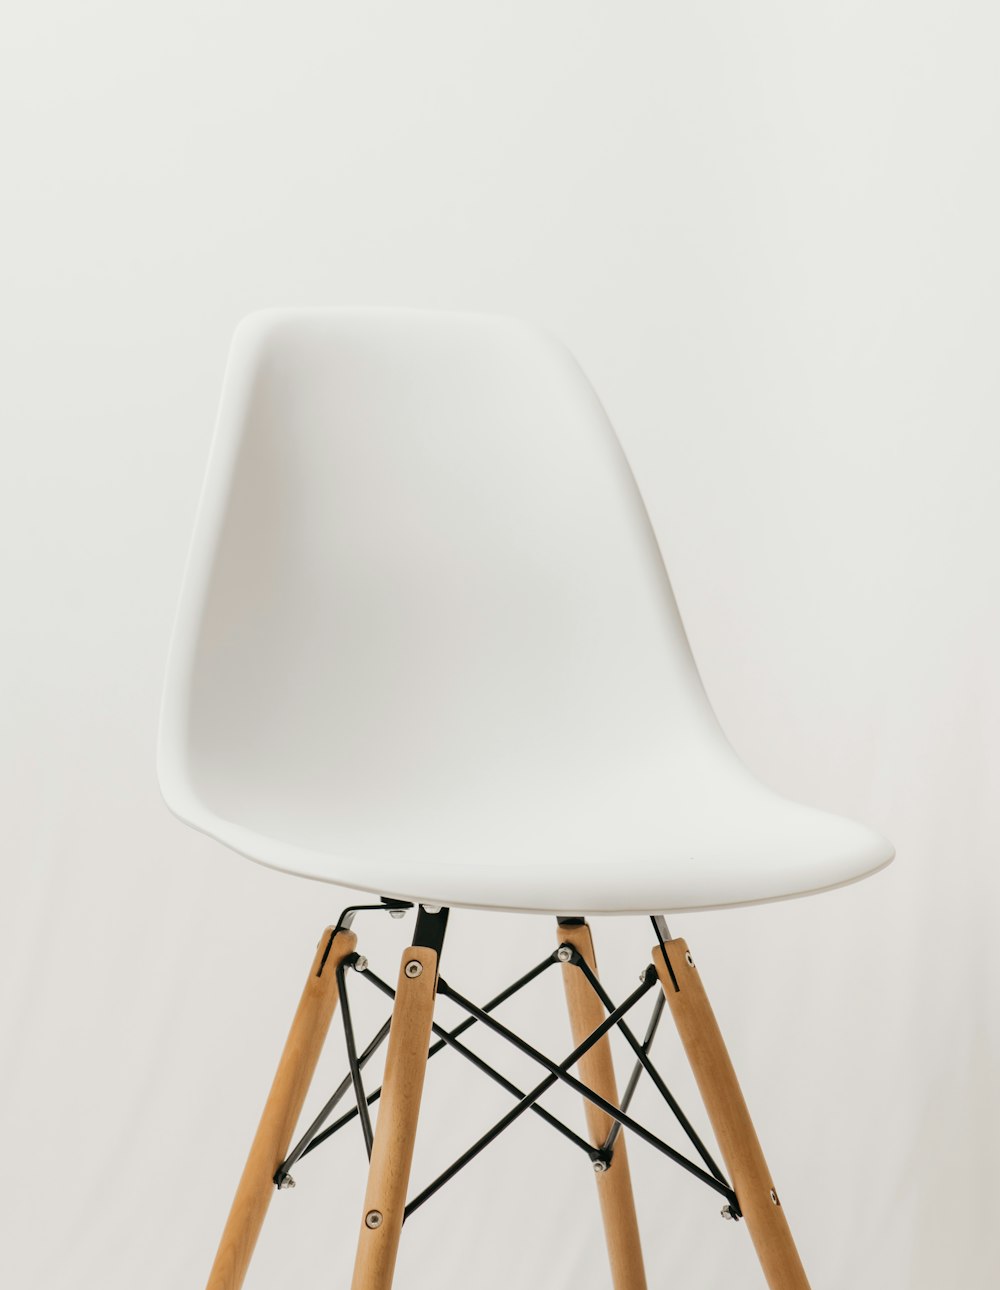 갈색 나무 프레임이 있는 흰색 의자